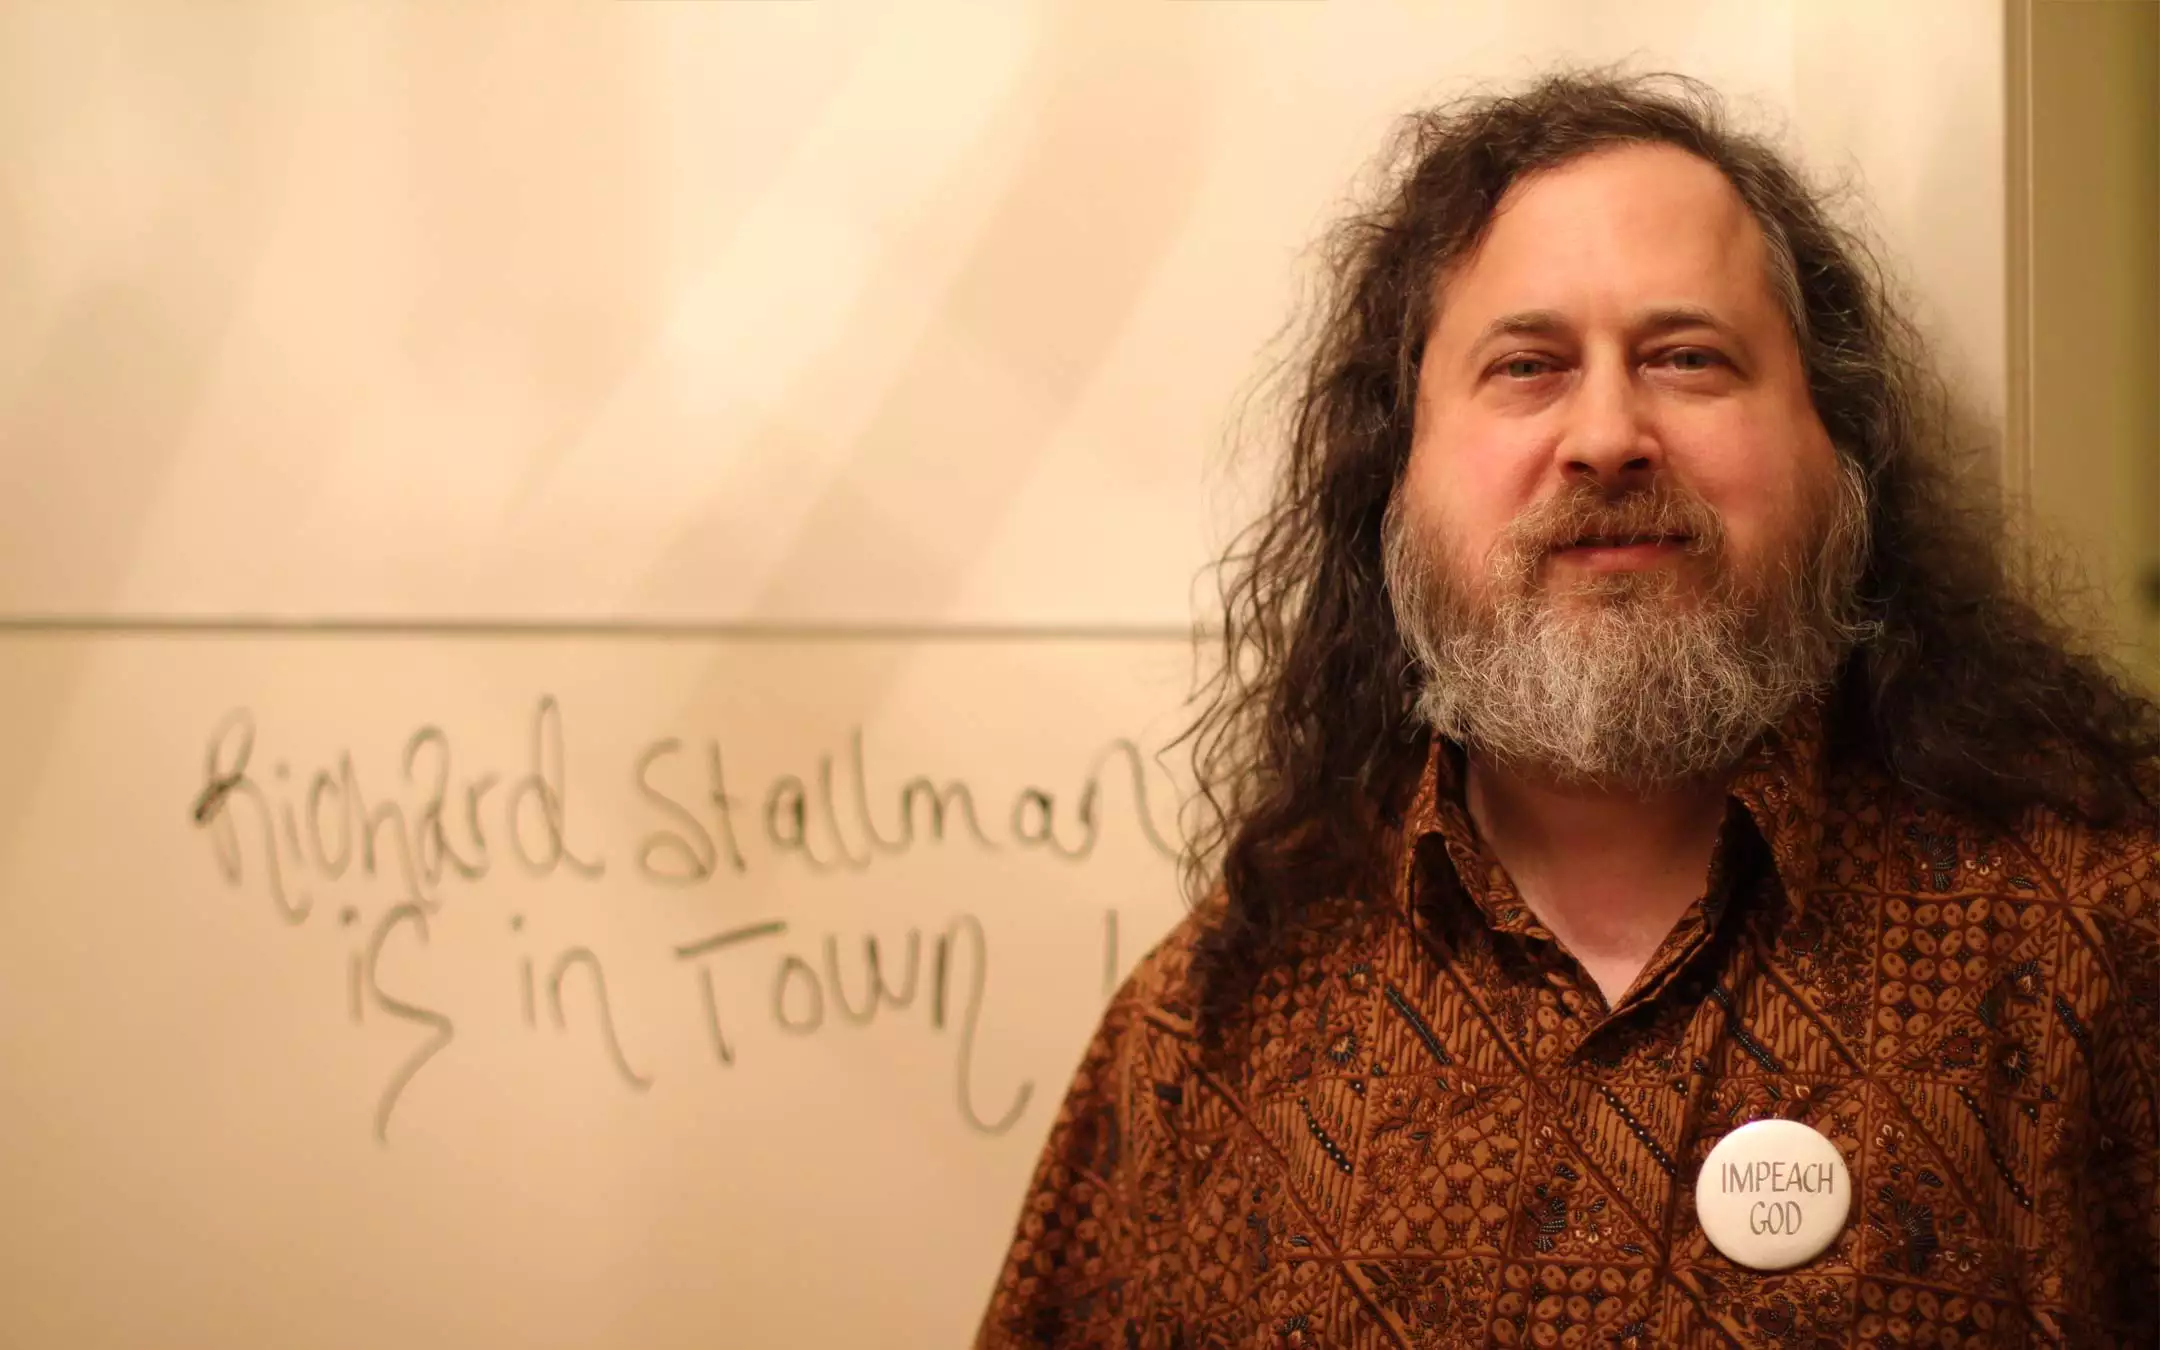 Richard Stallman @UniBo